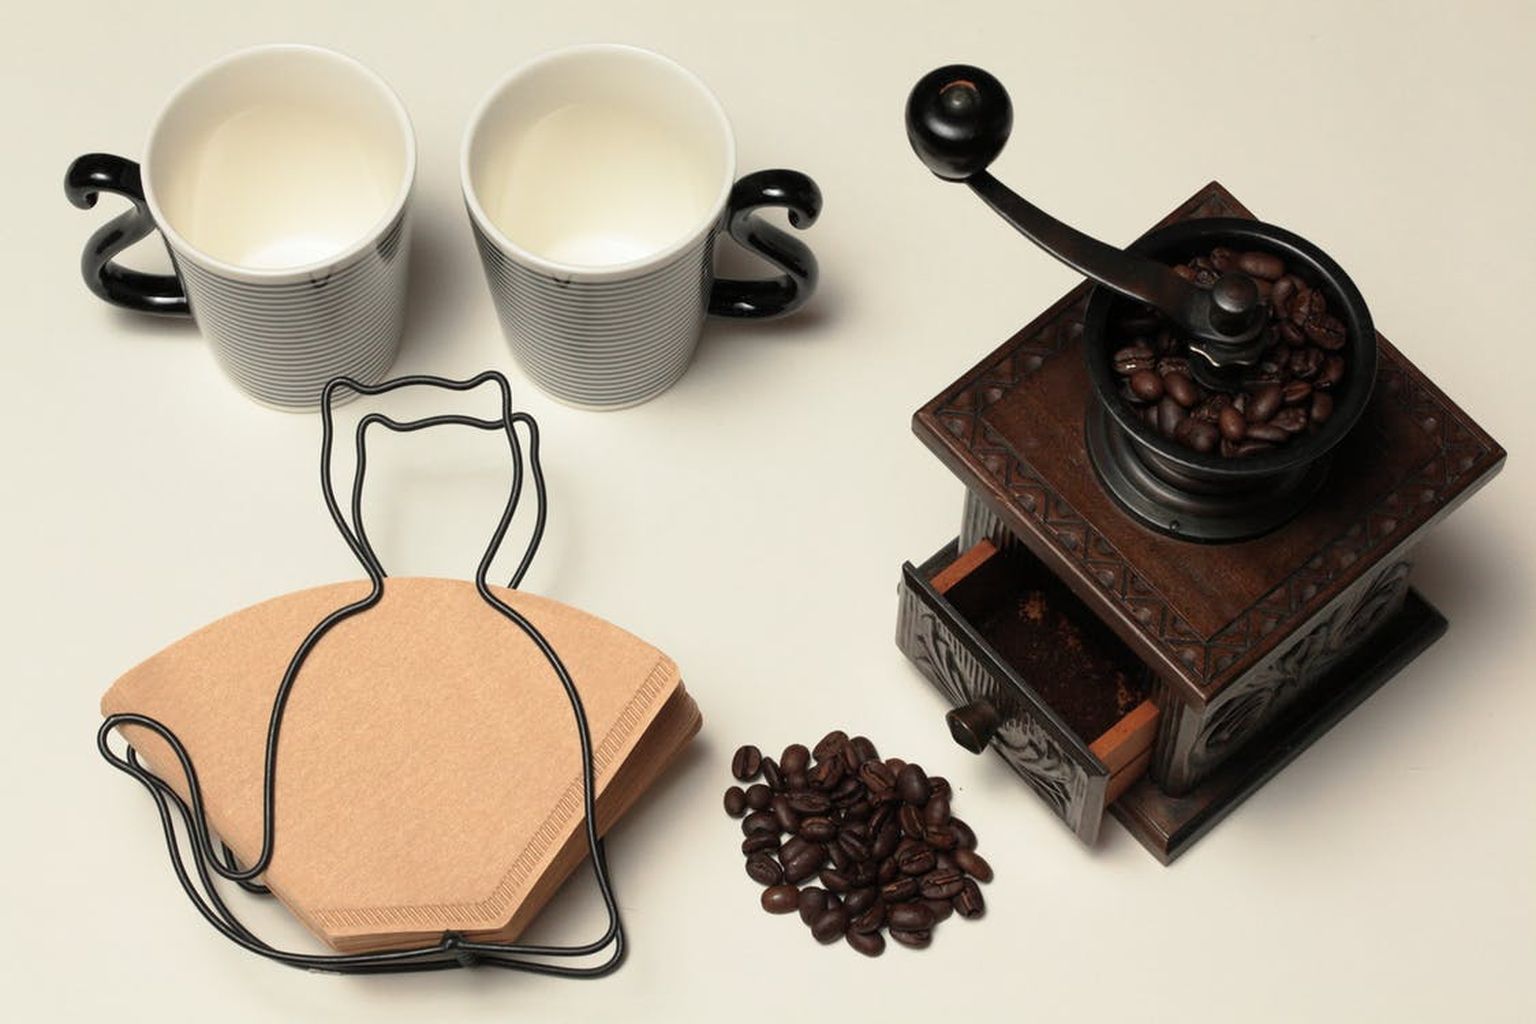 Kohvifilter võib olla kasuks koduses majapidamises.